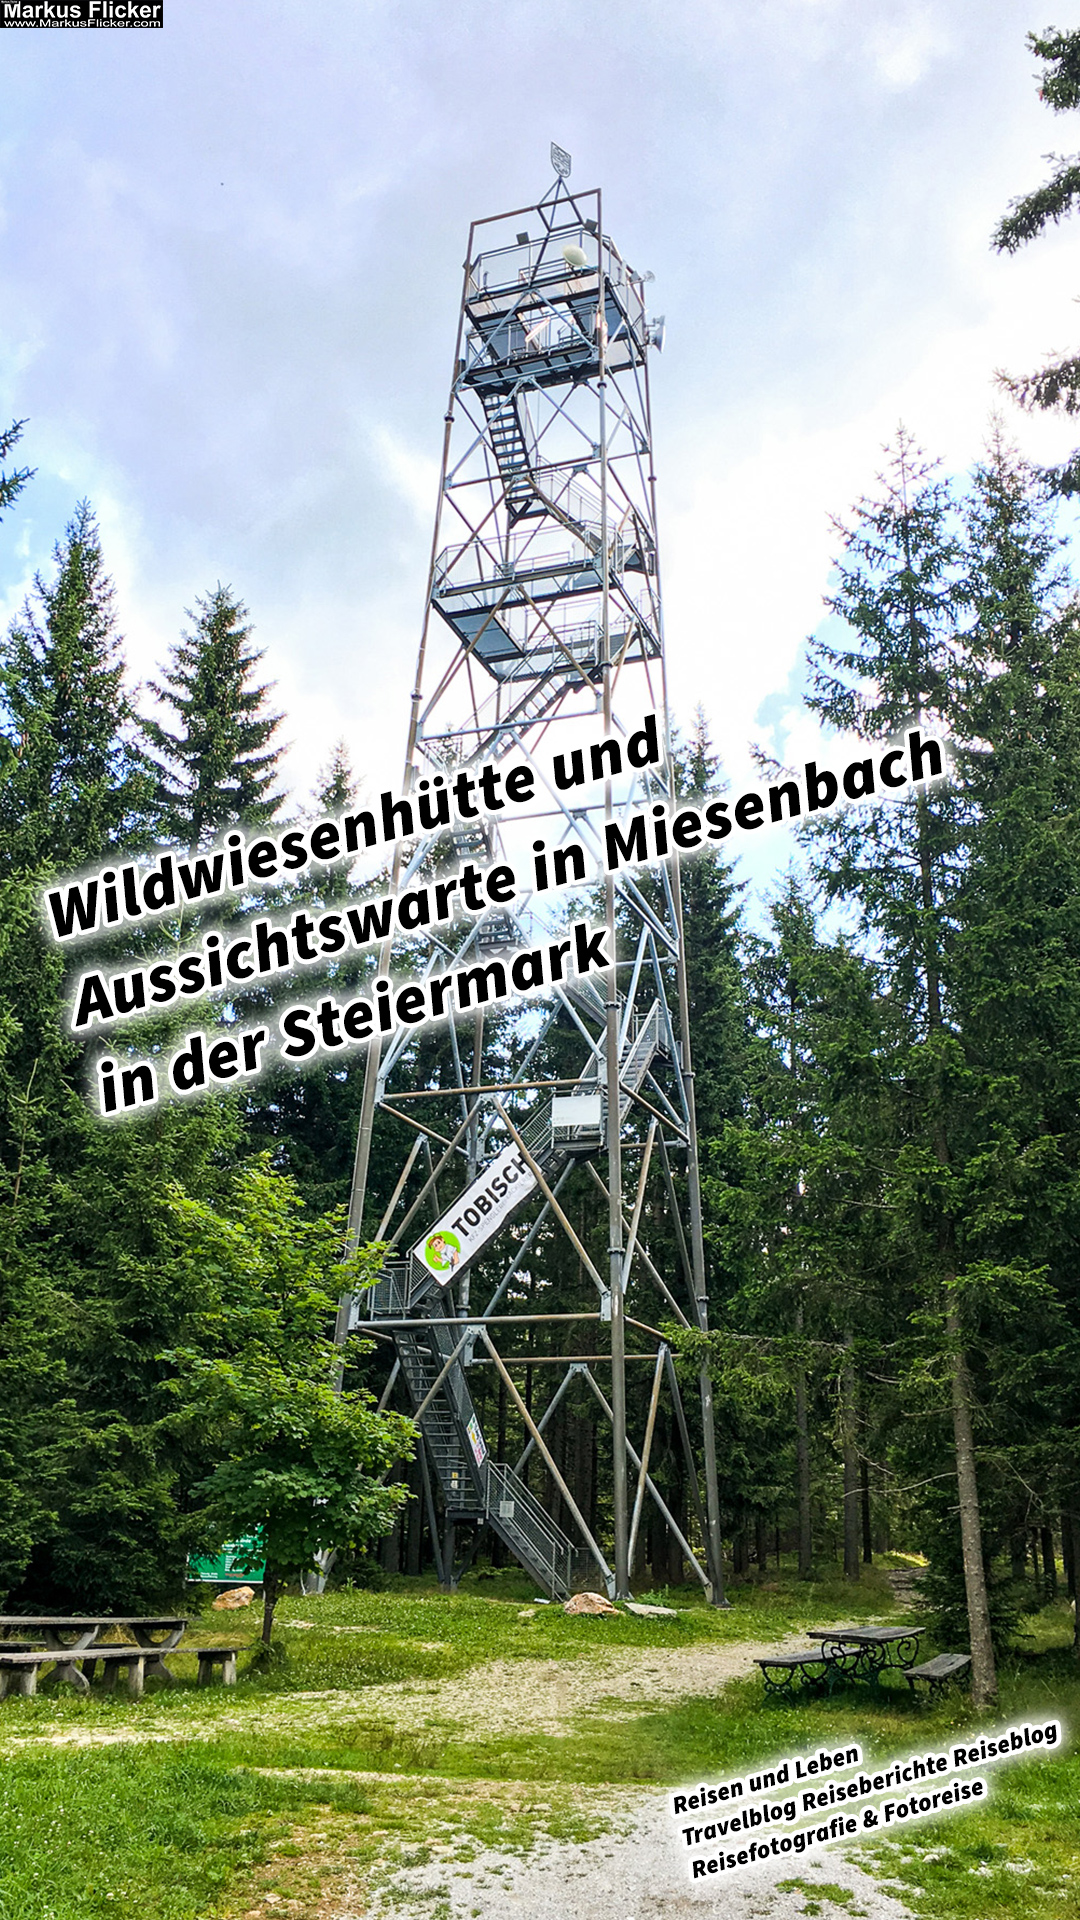 Wildwiesenhütte und Aussichtswarte in Miesenbach in der Steiermark Österreich